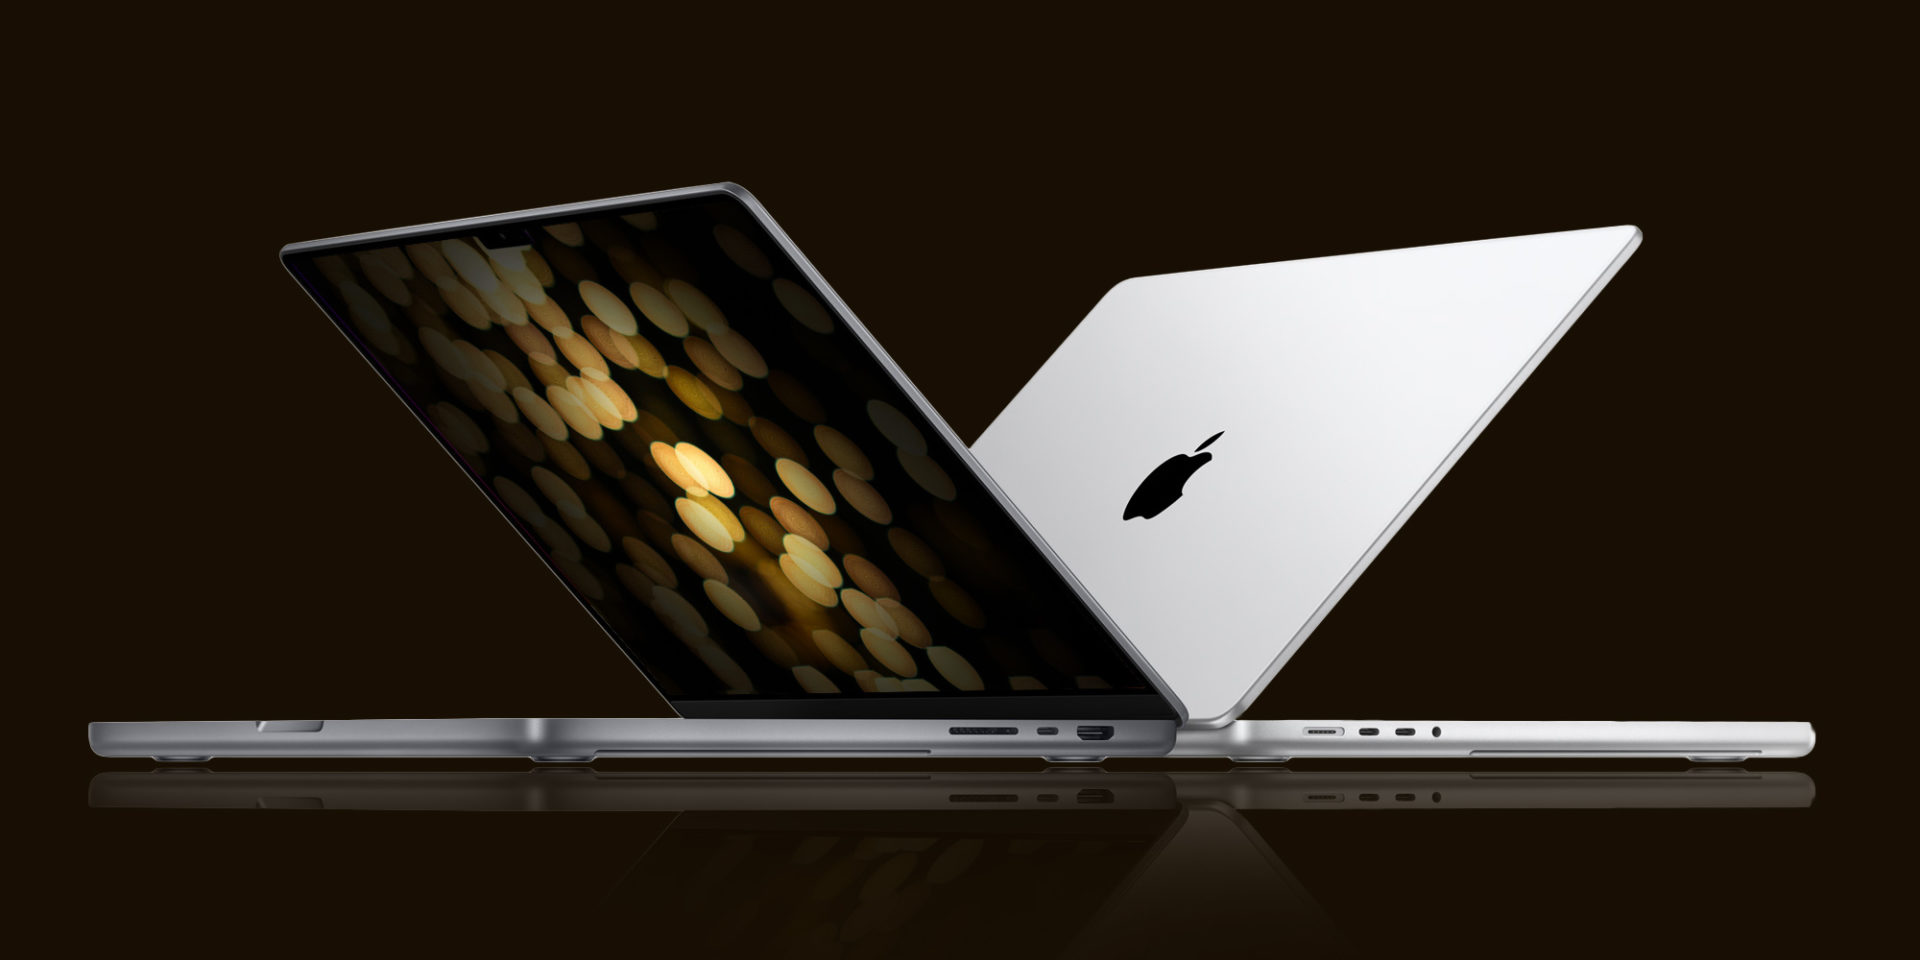 ลือ!! ปีนี้ Apple เตรียมเปิดตัว MacBook Pro รุ่นเริ่มต้น พร้อมชิปใหม่ Apple M2